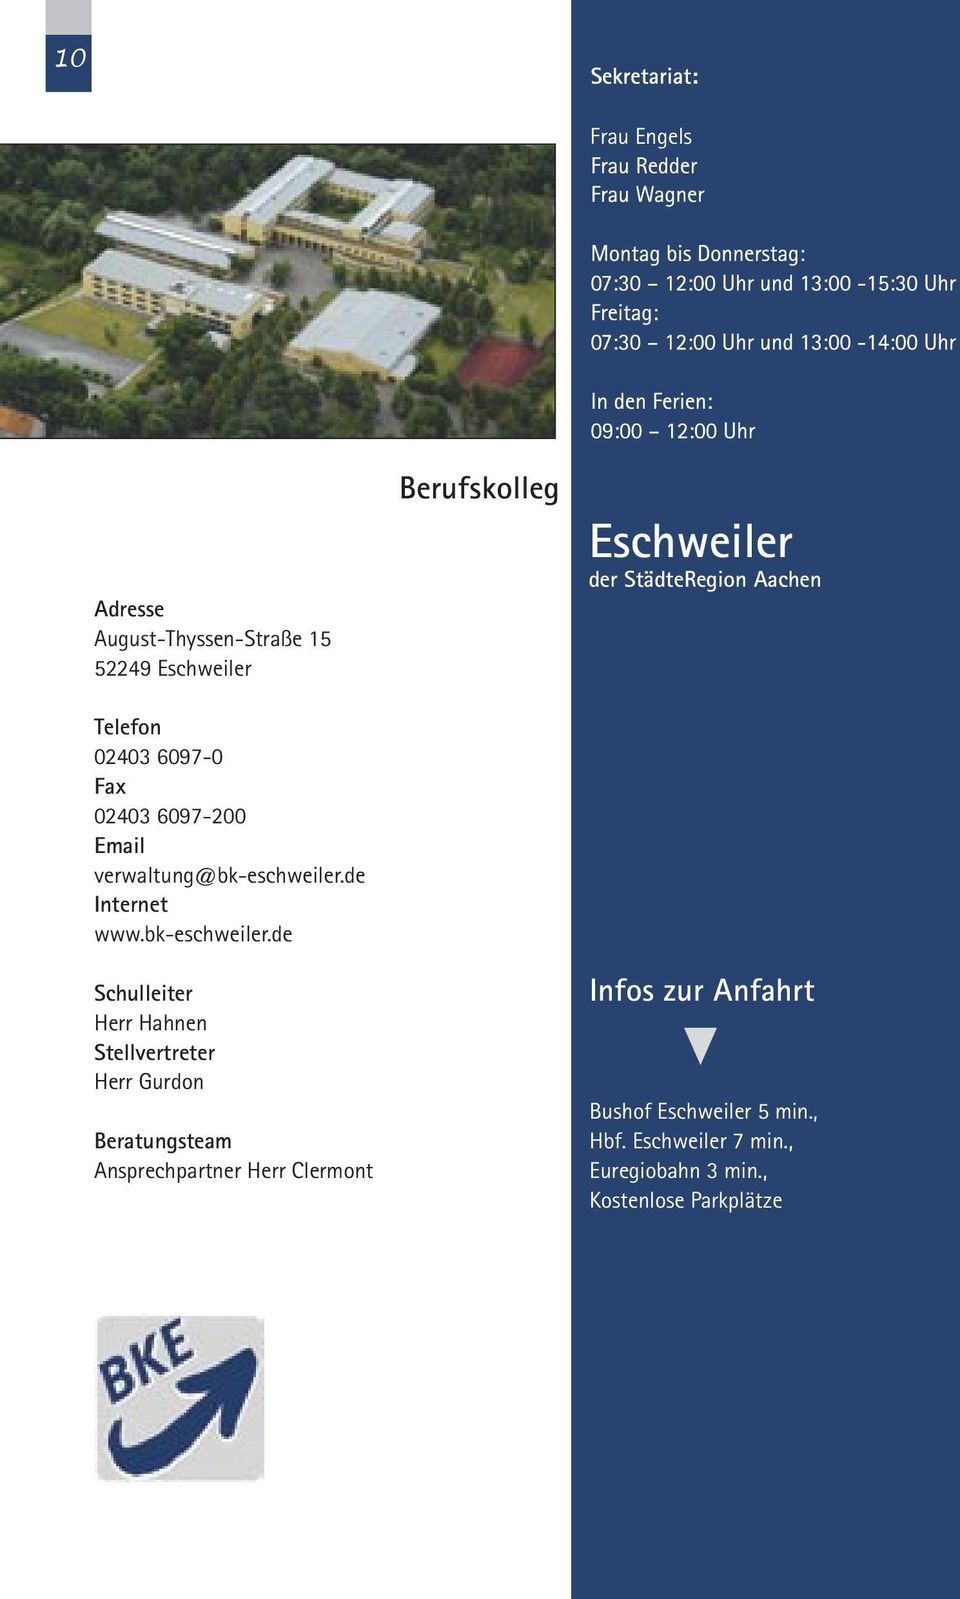 de Internet www.bk-eschweiler.